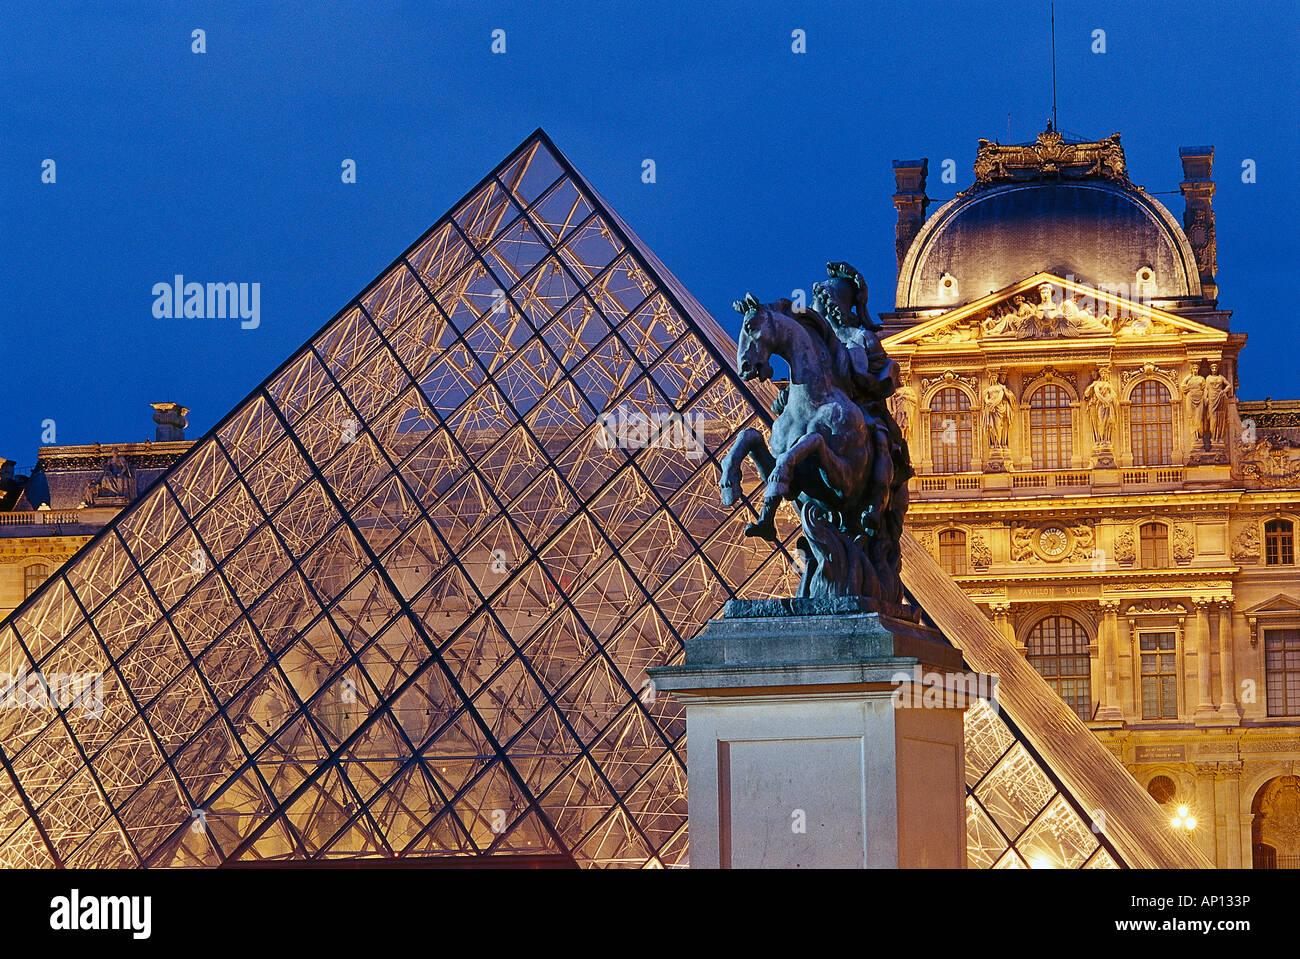 Pyramide de verre et le Louvre, Paris, France Banque D'Images